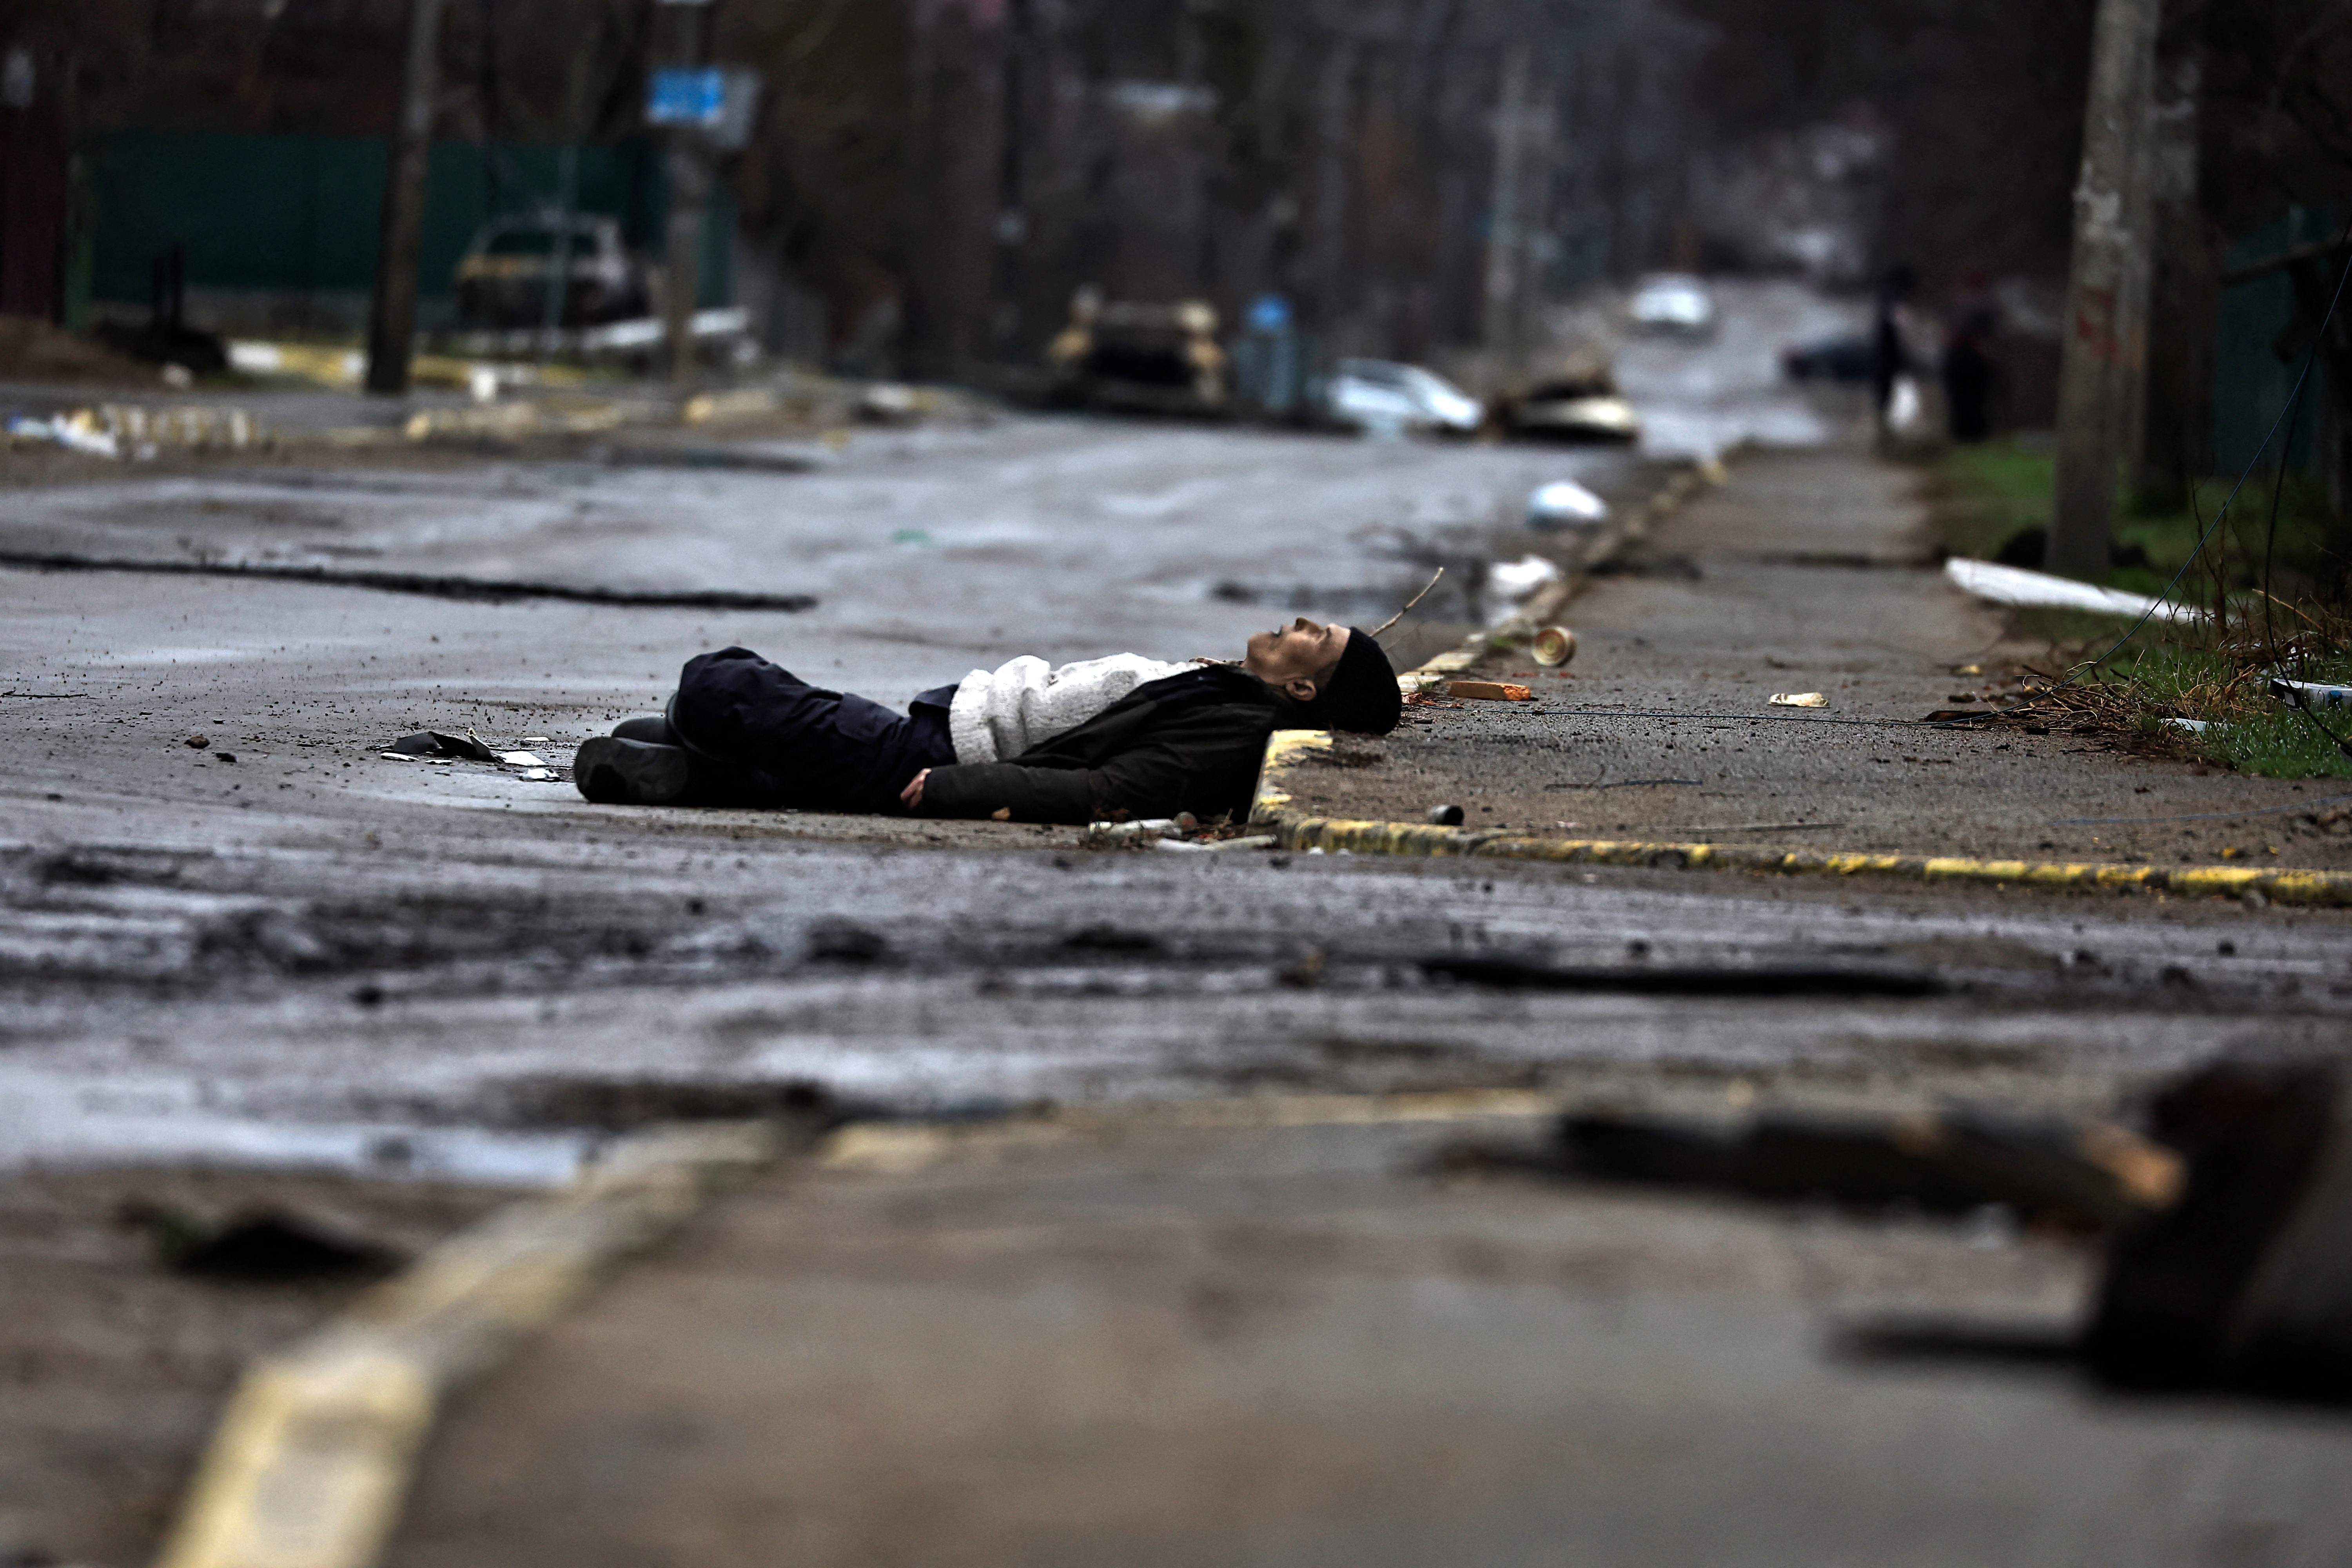 MATERIAL SENSIBLE. ESTA IMAGEN PUEDE OFENDER O MOLESTAR. El cuerpo de un civil, que según los residentes fue asesinado por soldados del ejército ruso, yace en la calle, en medio de la invasión rusa de Ucrania, en Bucha, en la región de Kiev, Ucrania. REUTERS/ Zohra Bensemra